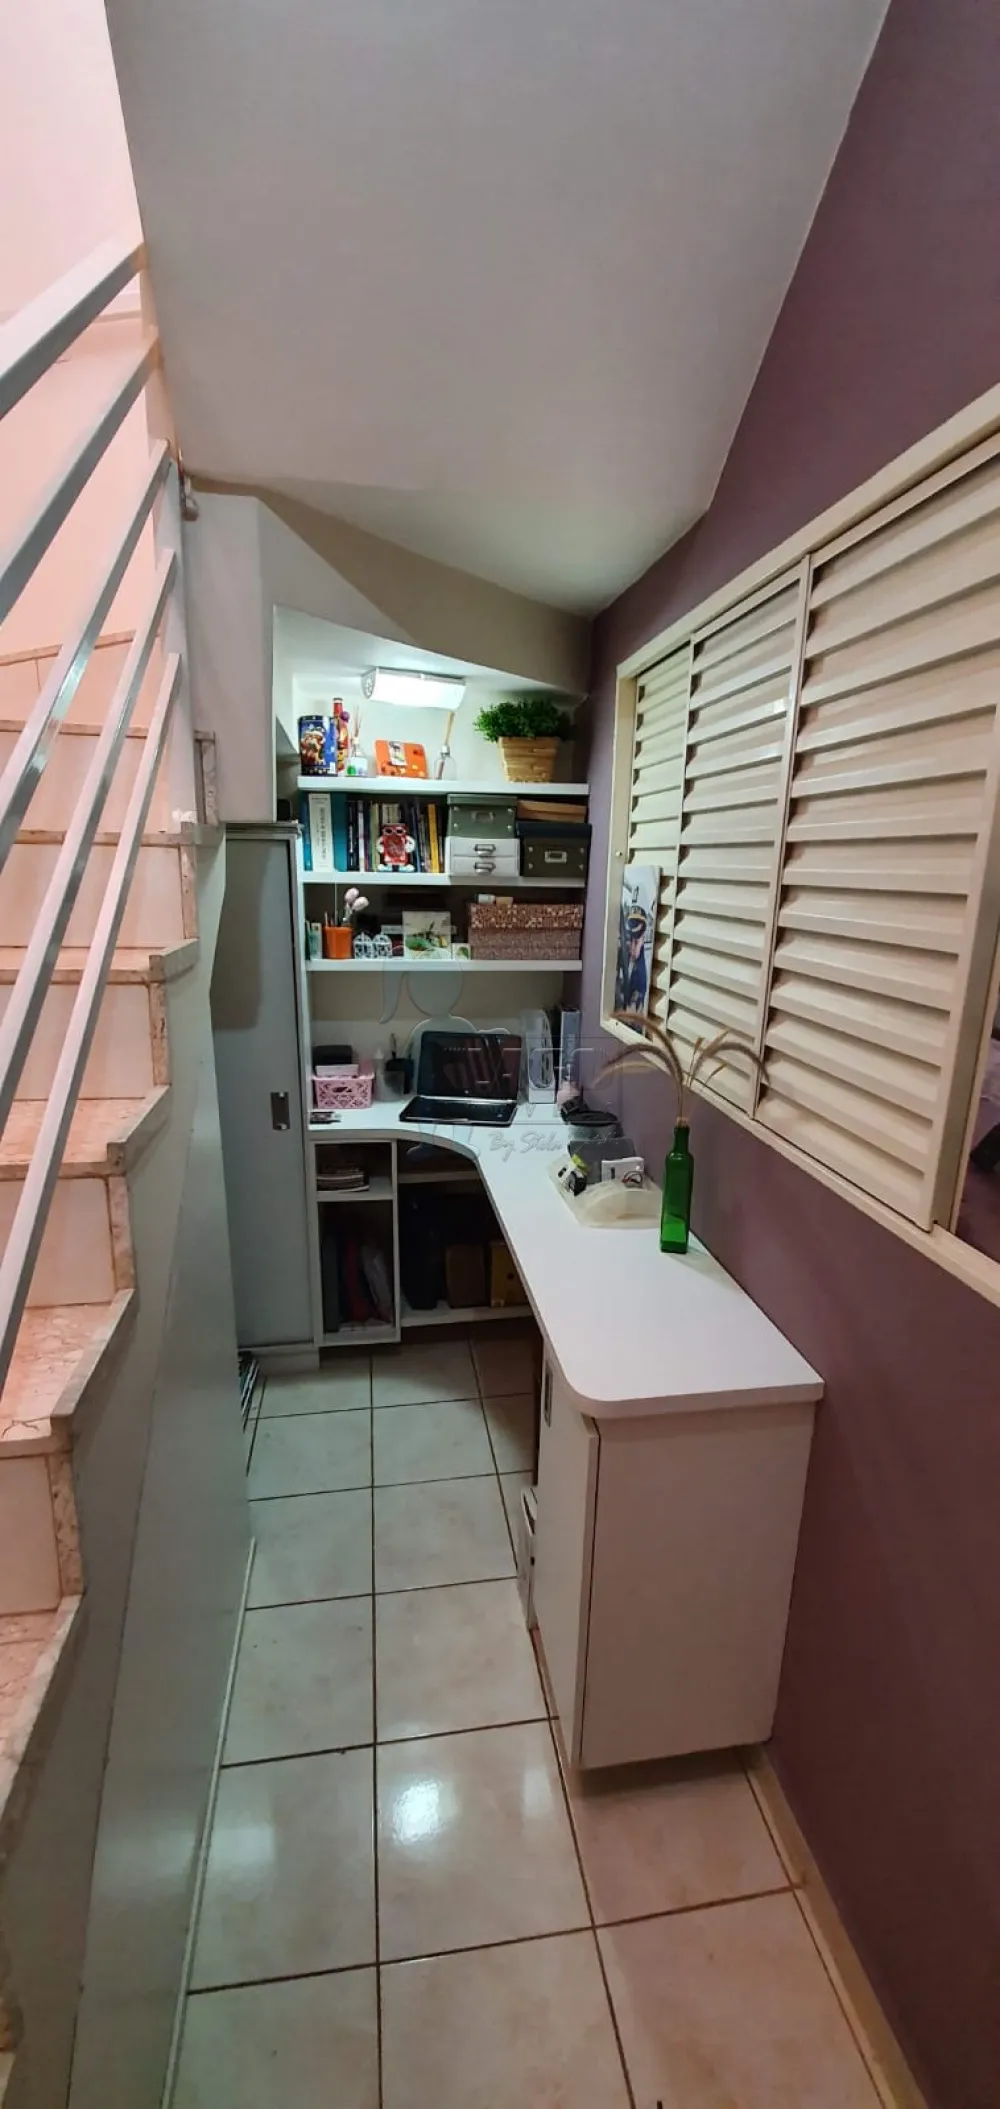 Comprar Casa / Padrão em Ribeirão Preto R$ 530.000,00 - Foto 10